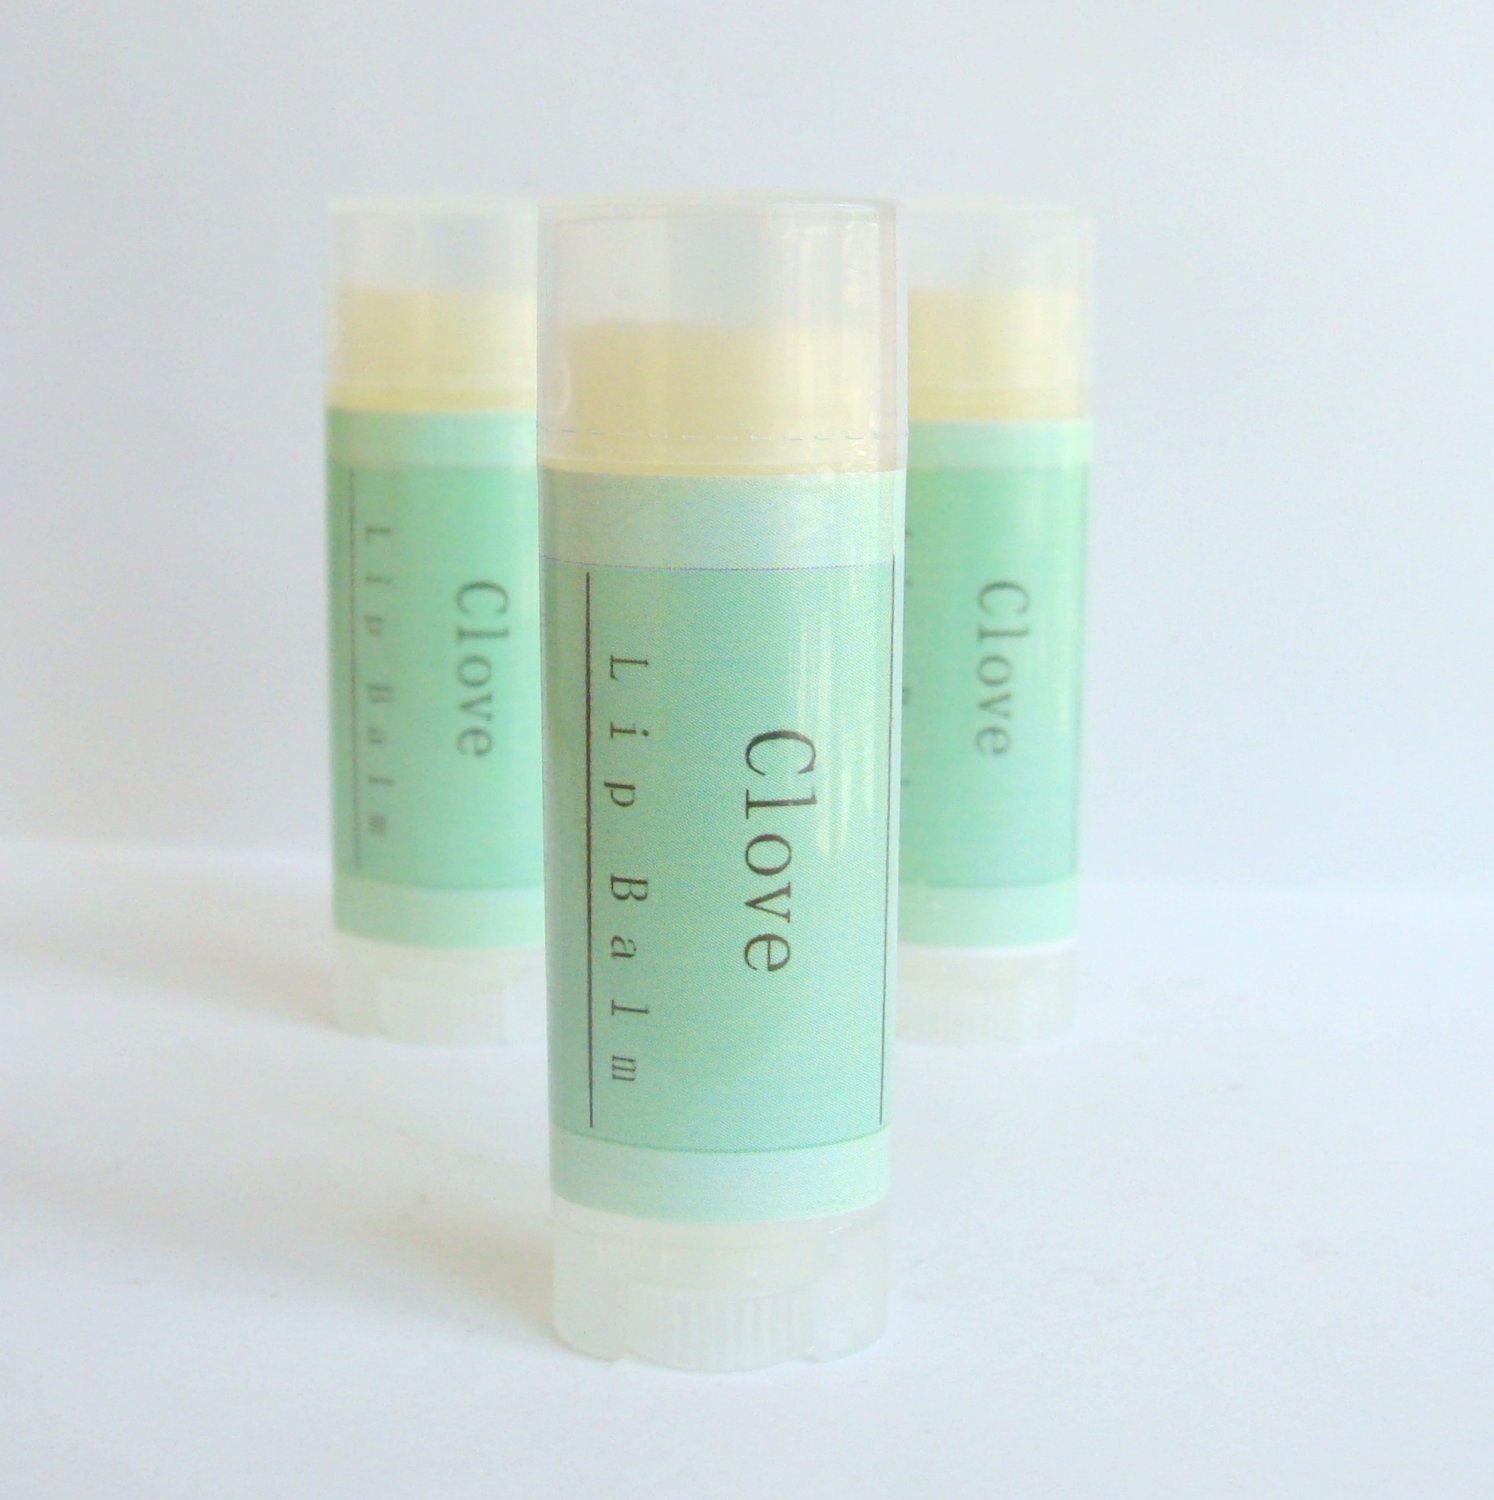 Clove Leaf Lip Balm Gloss Herbal Natural - ABreathOfFrenchAir